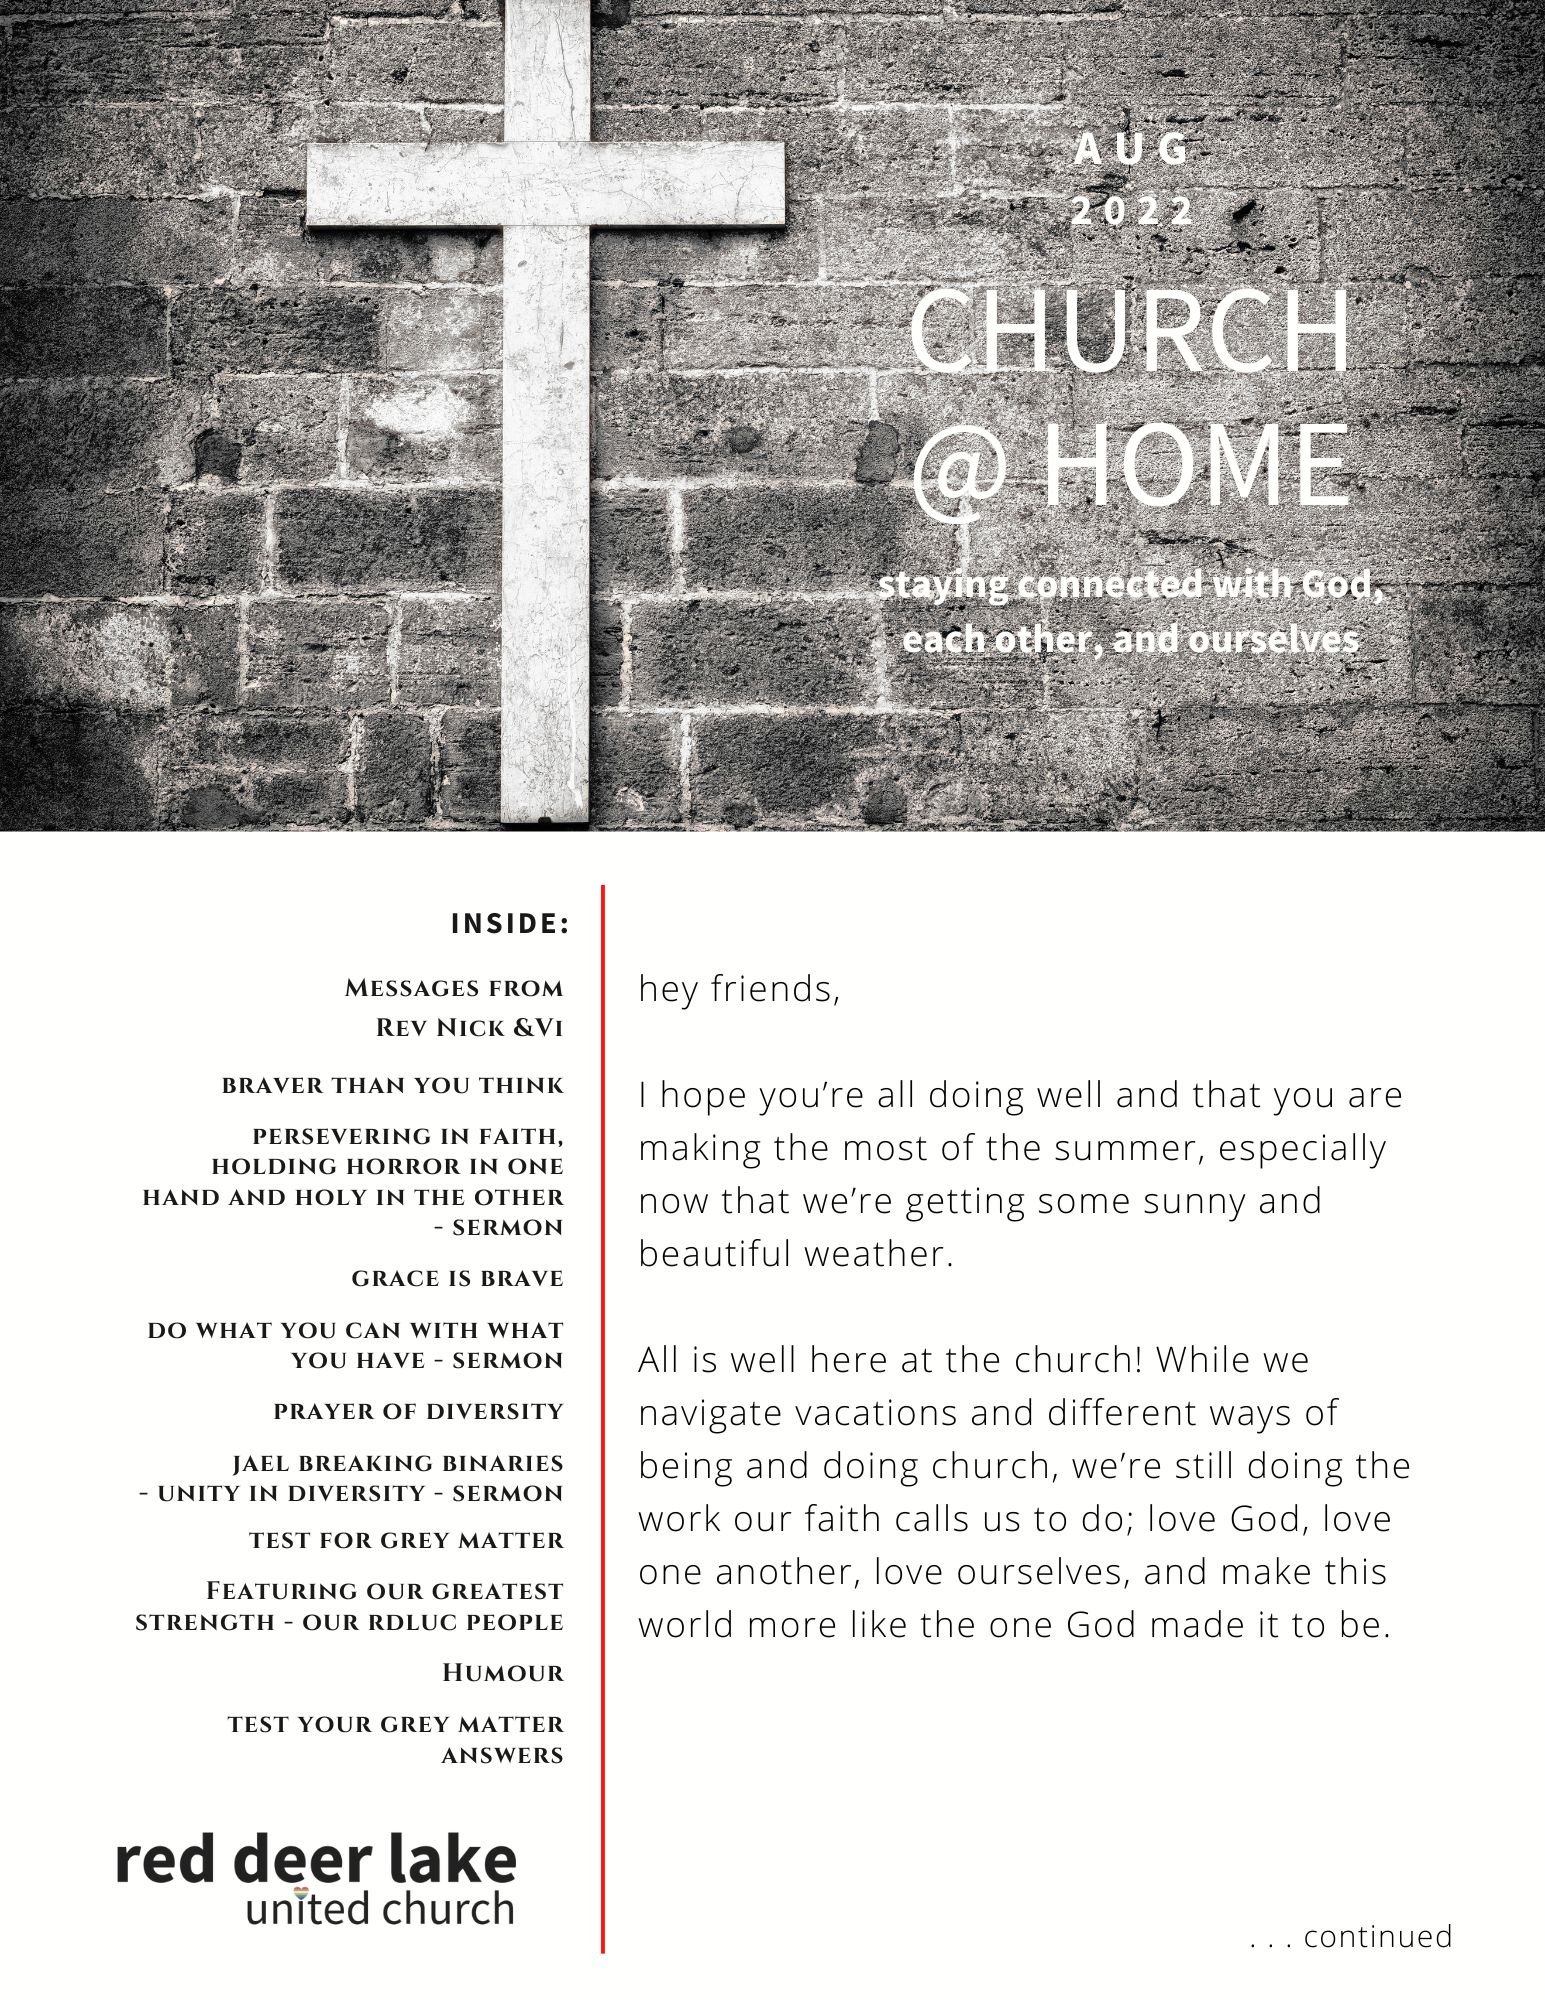 Church @ Home Aug 2022 cover.jpg